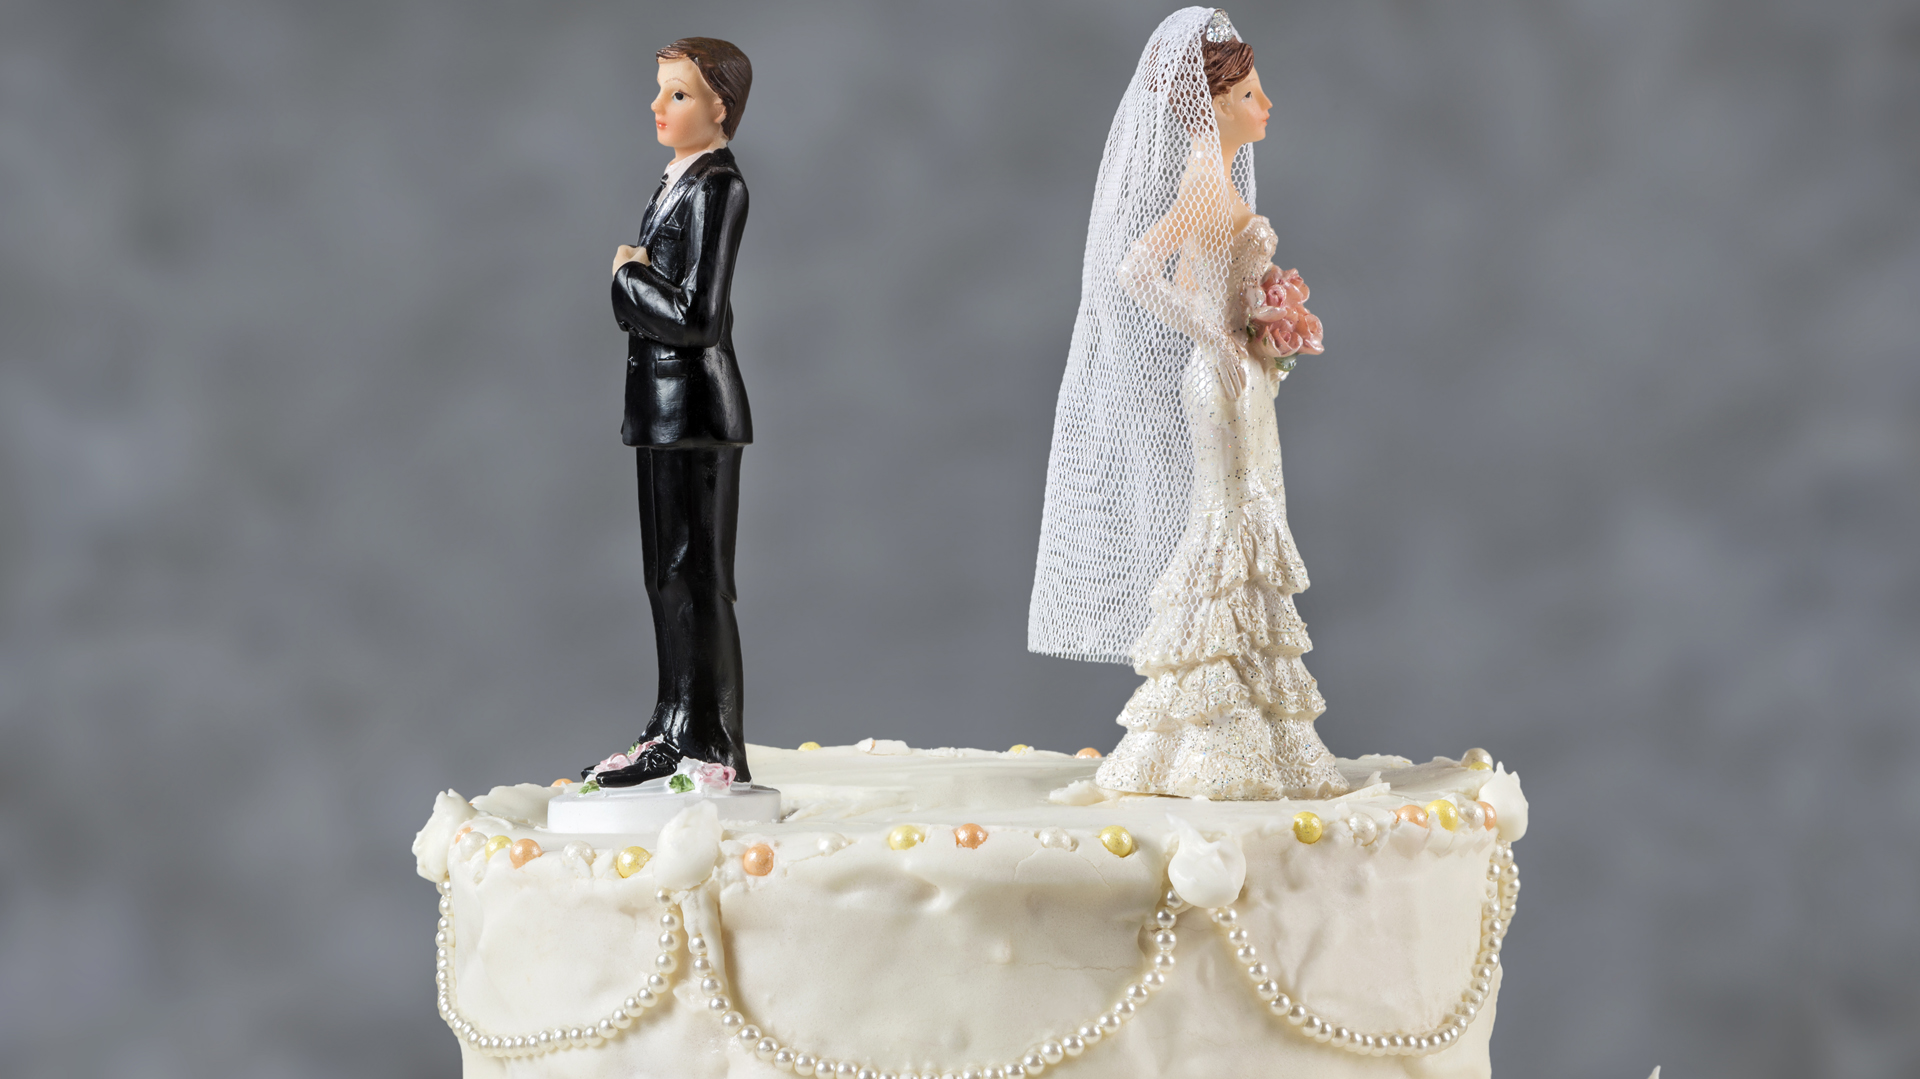 En una investigación realizada por la socióloga Susan L. Brown, autora del libro Familias en América, junto con Matthew Wright, de la Appalachian State University, se encontró que los adultos mayores de 50 años hoy aceptan más el divorcio que las personas más jóvenes (iStock)